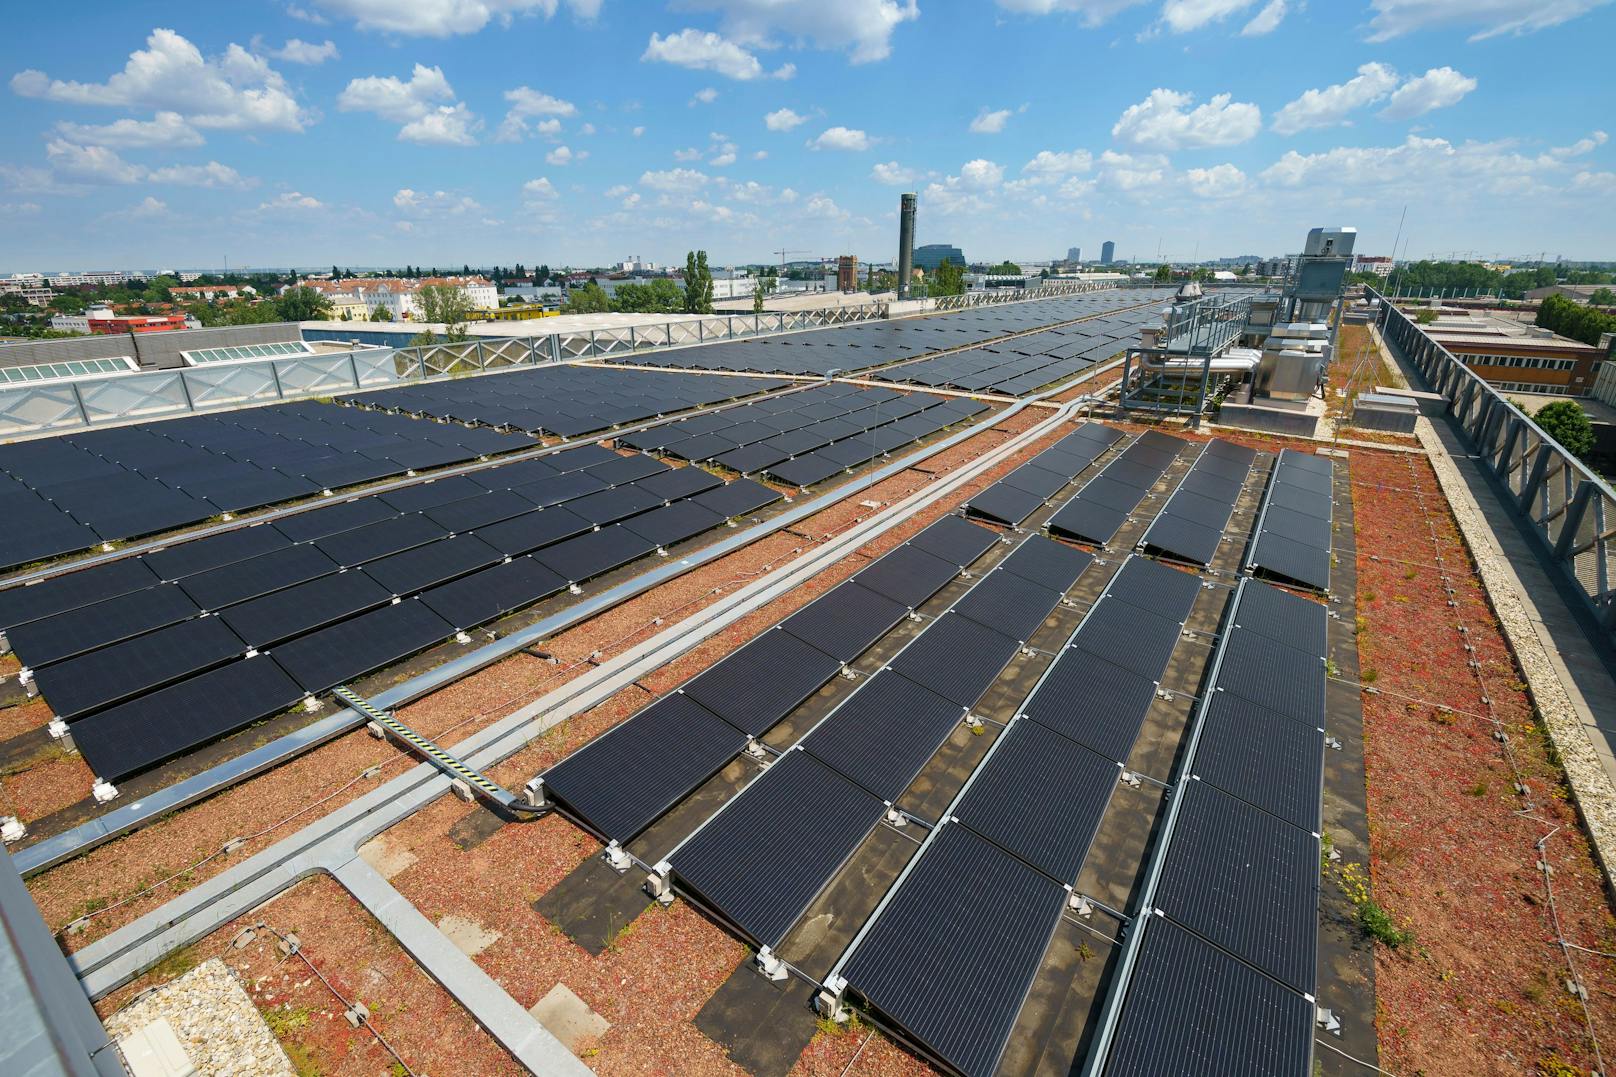 Bis 2025 sollen rund 50 MW zusätzliche Photovoltaik-Leistung durch Sonnenkraftwerke auf Flächen der Stadt entstehen. Dazu werden Amtsgebäude ebenso genutzt wie Schulen, Bäder oder wie hier das Dach der Klinik Floridsdorf.&nbsp;